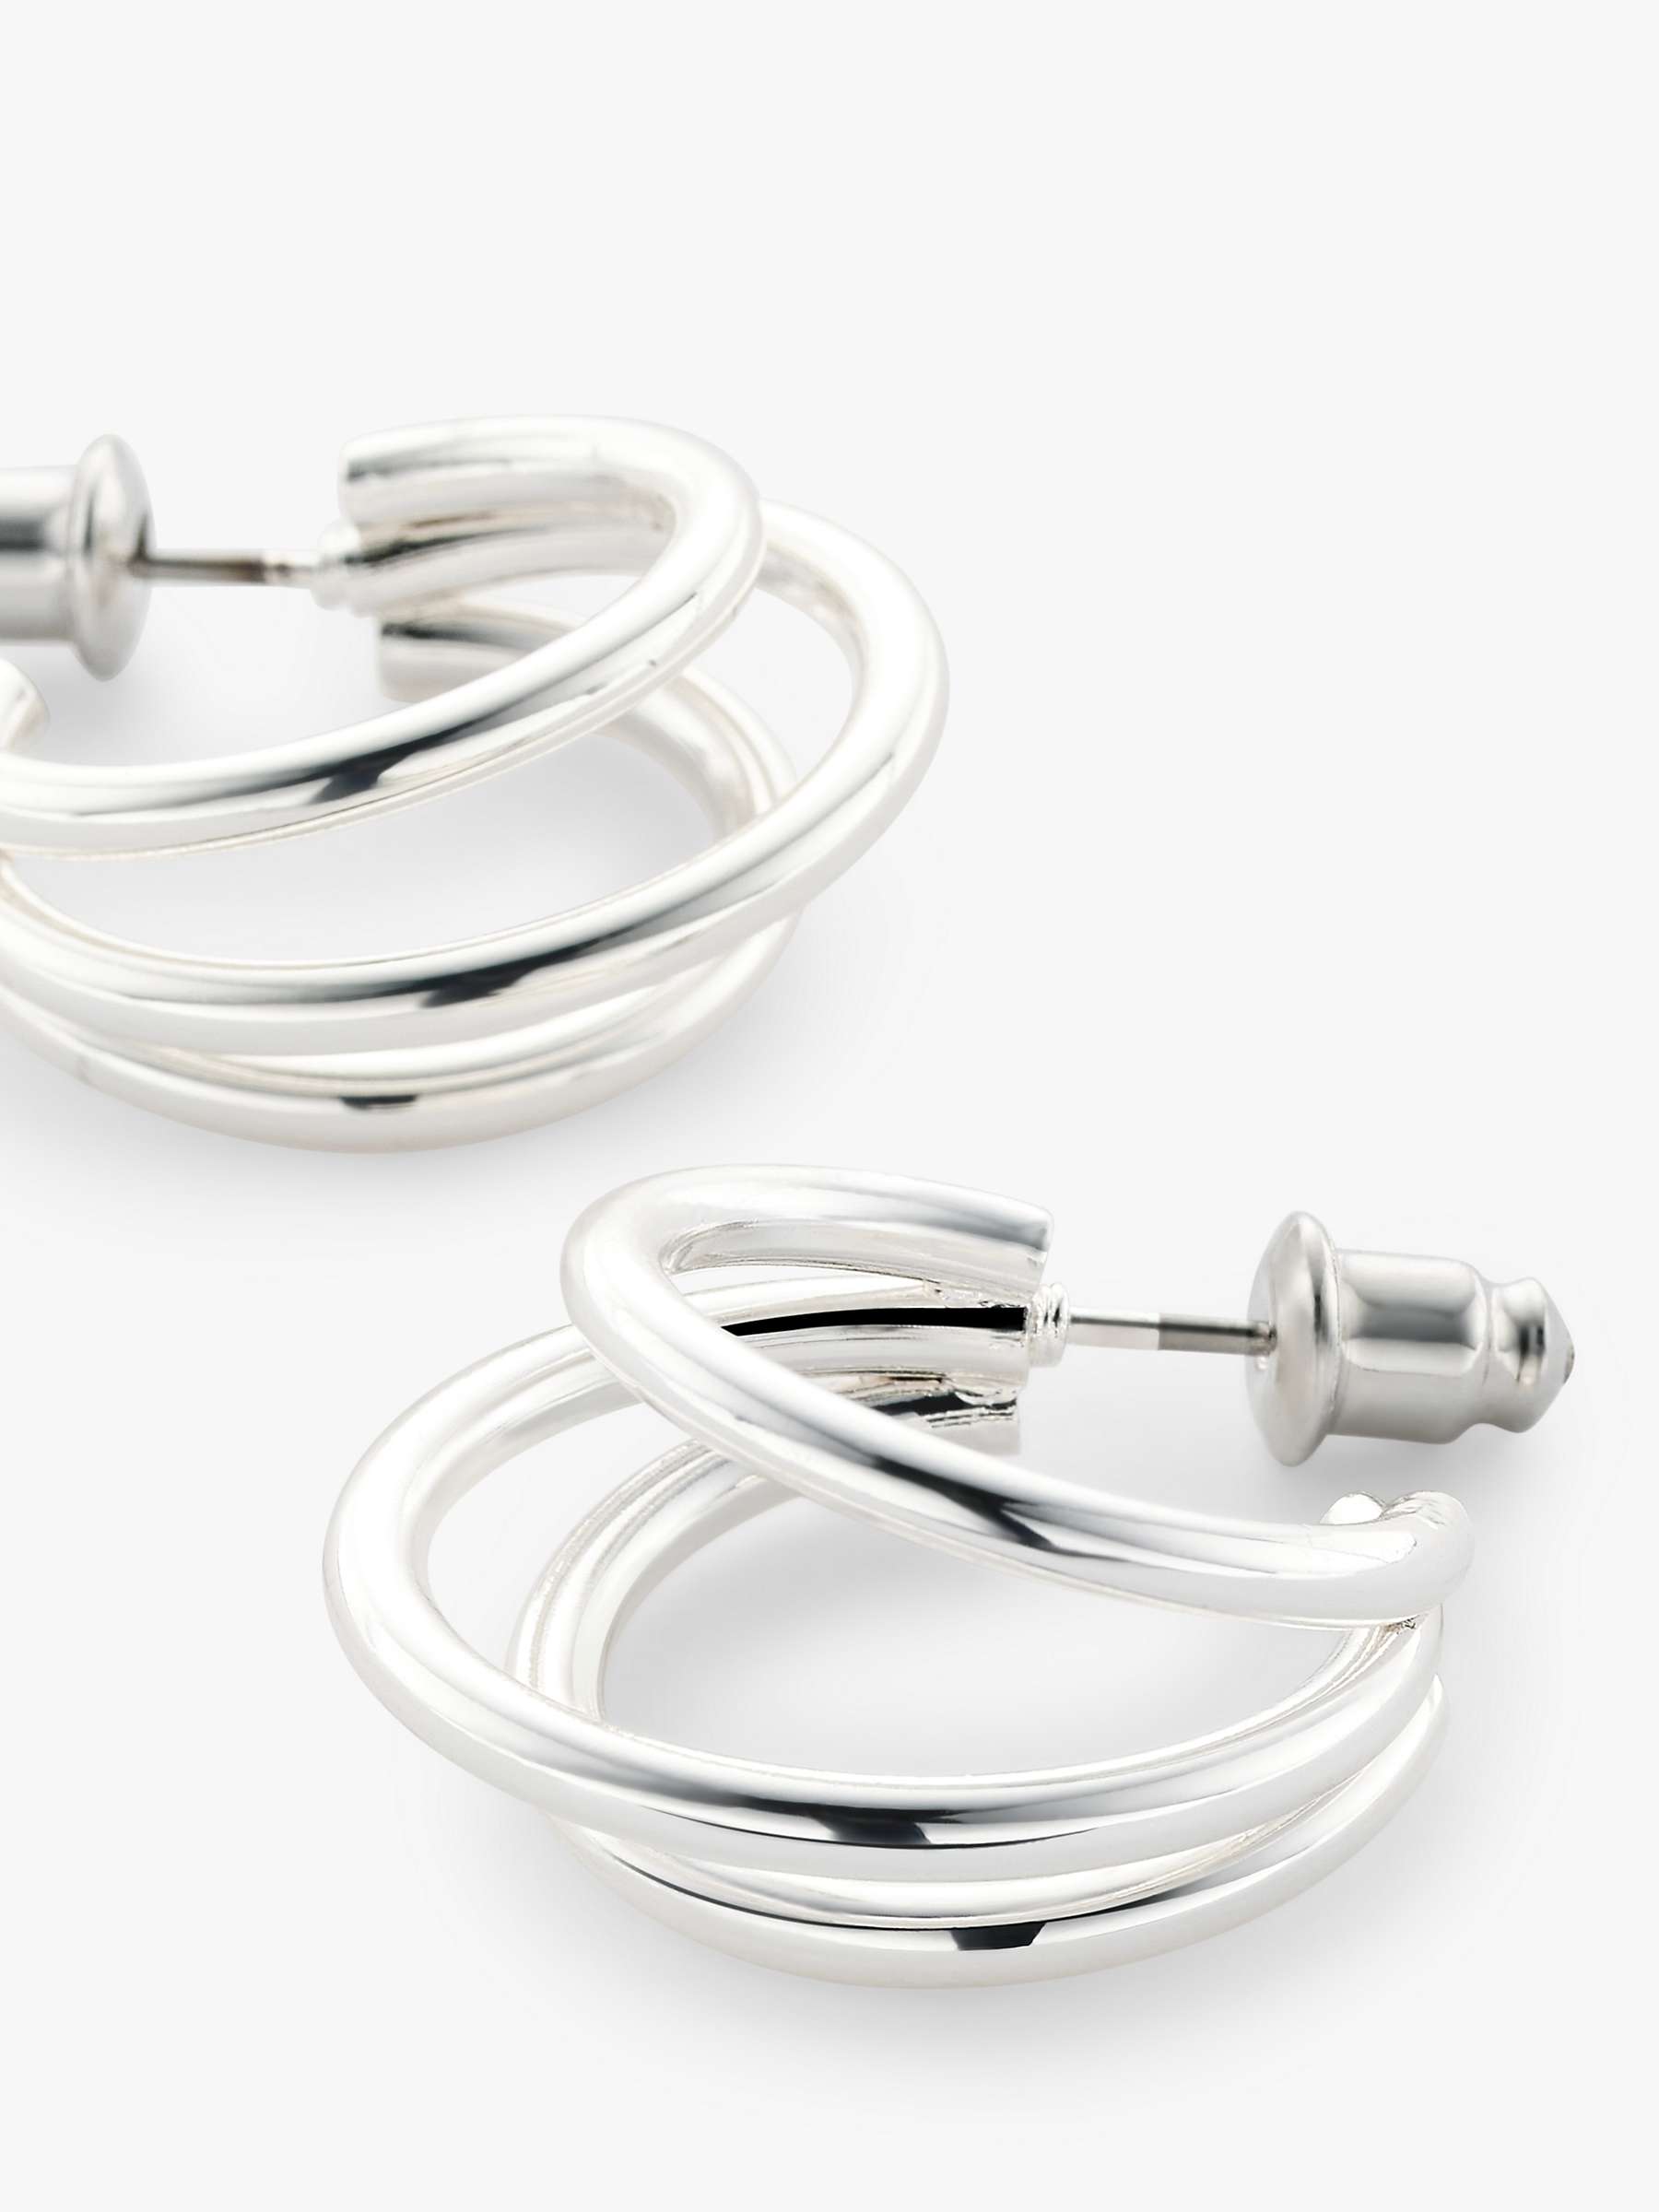 Buy John Lewis Polished Triple Hoop Earrings Online at johnlewis.com